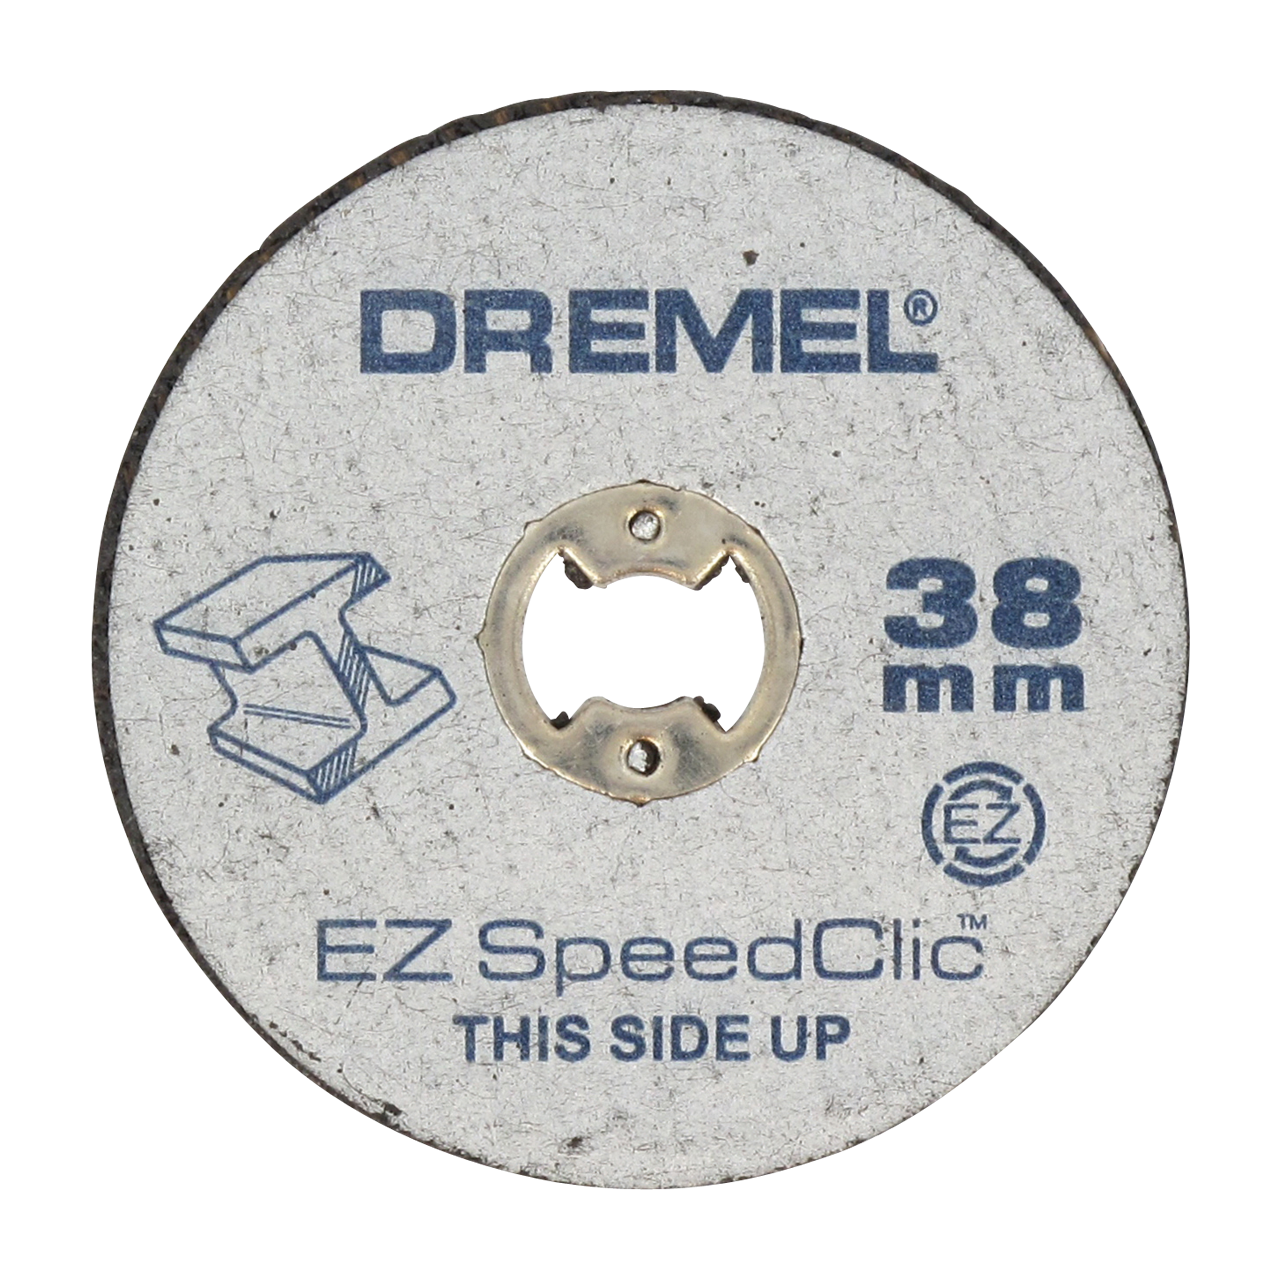 Jeu de 10 disques à tronçonner EZ SpeedClic DREMEL